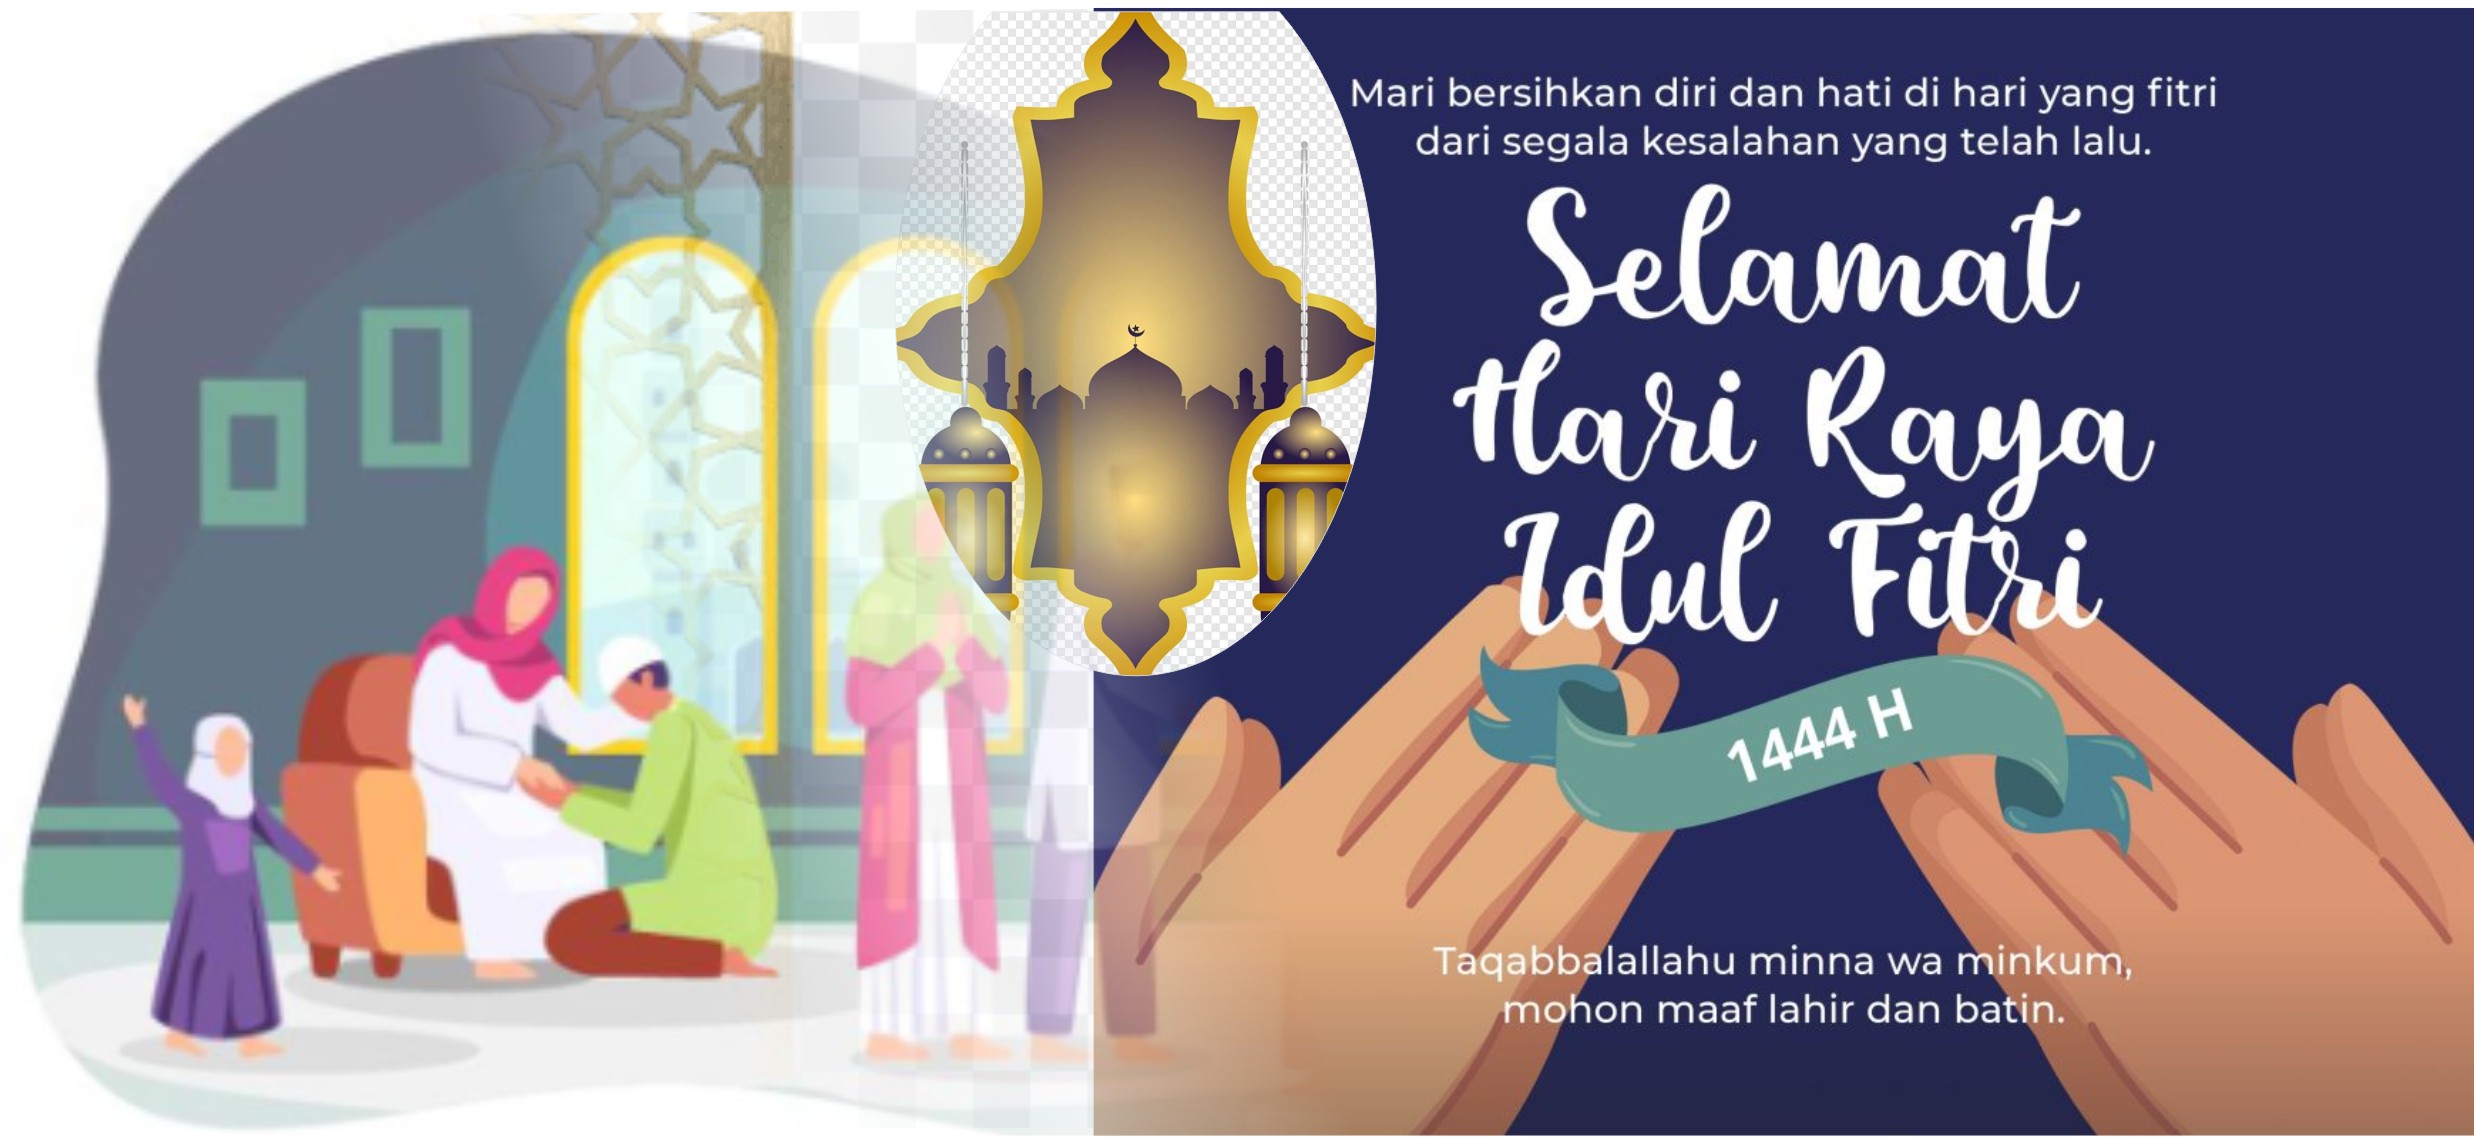 2. takbir 1 Halal Bi Halal Milenial Suara Utama ID Mengabarkan Kebenaran | Website Resmi Suara Utama